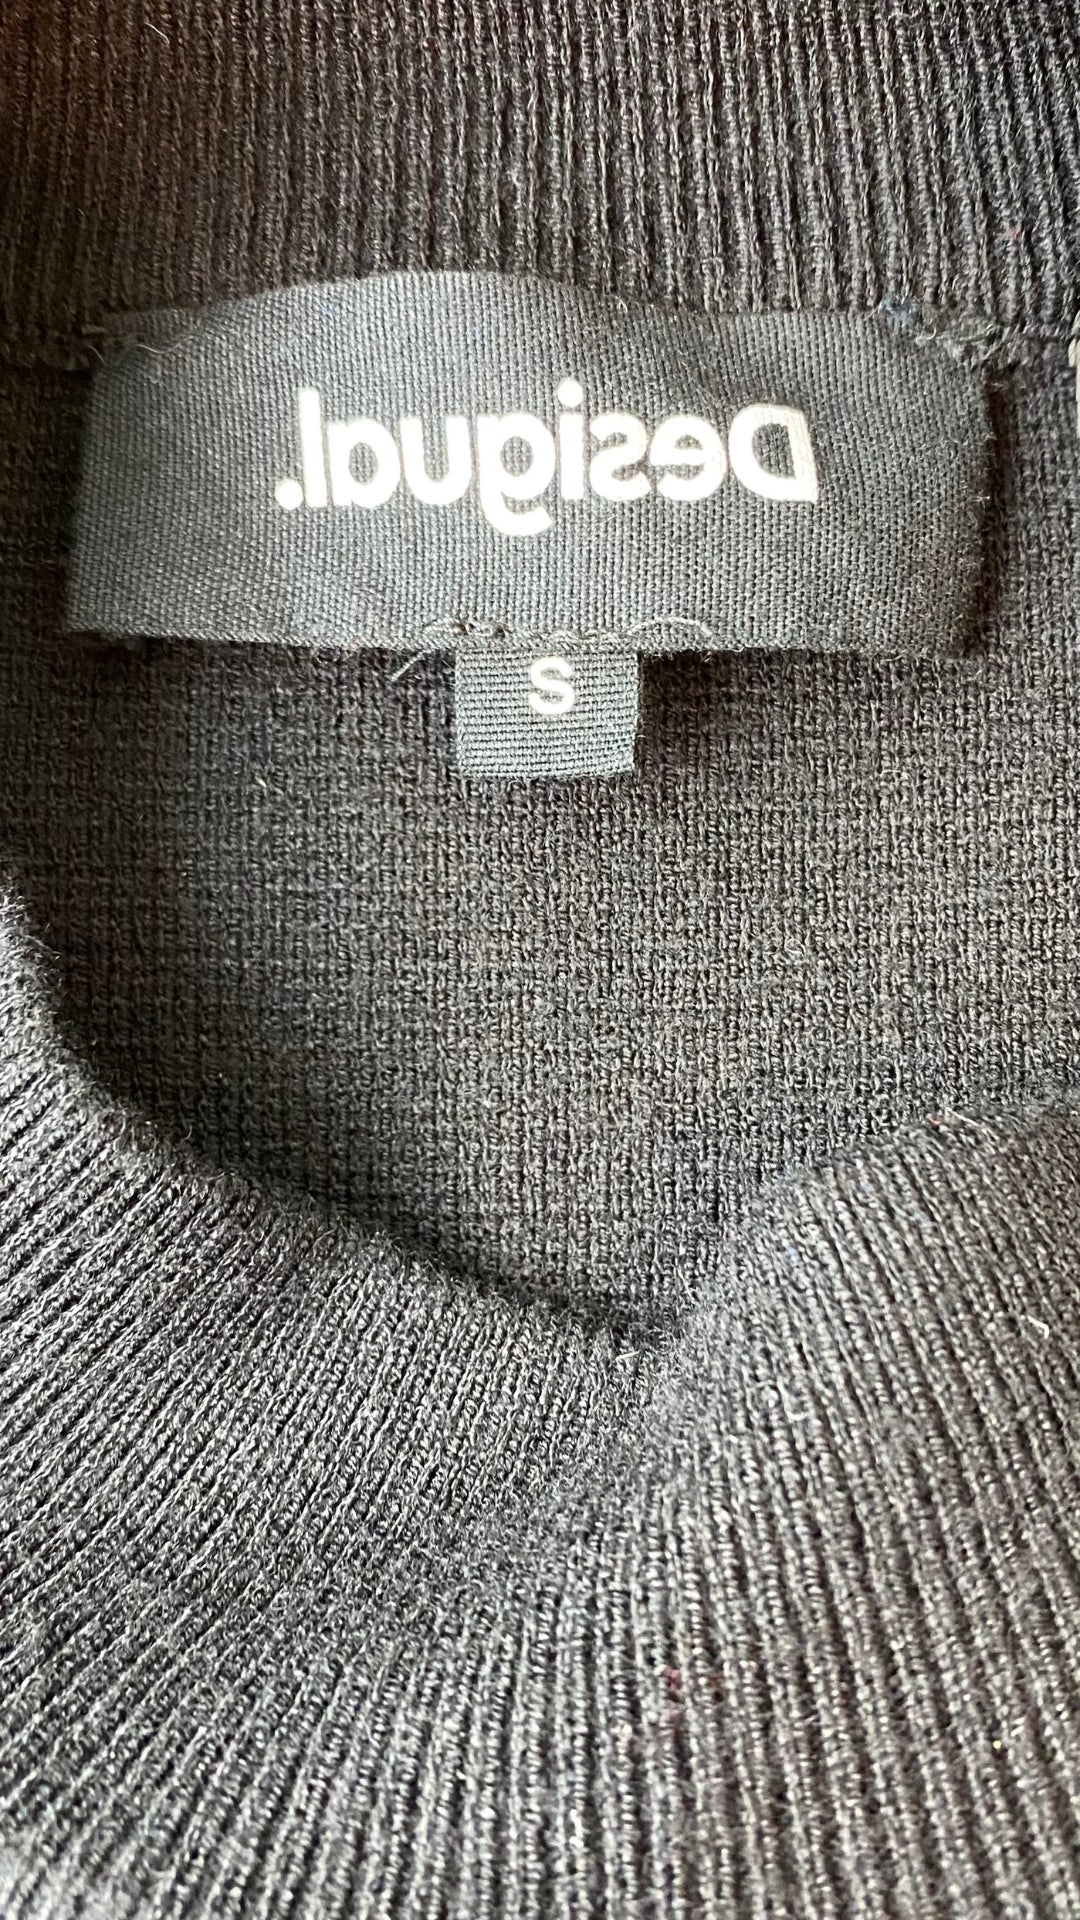 Chandail en tricot léger noir avec broderie Desigual, taille small. Vue de l'étiquette de marque et taille.